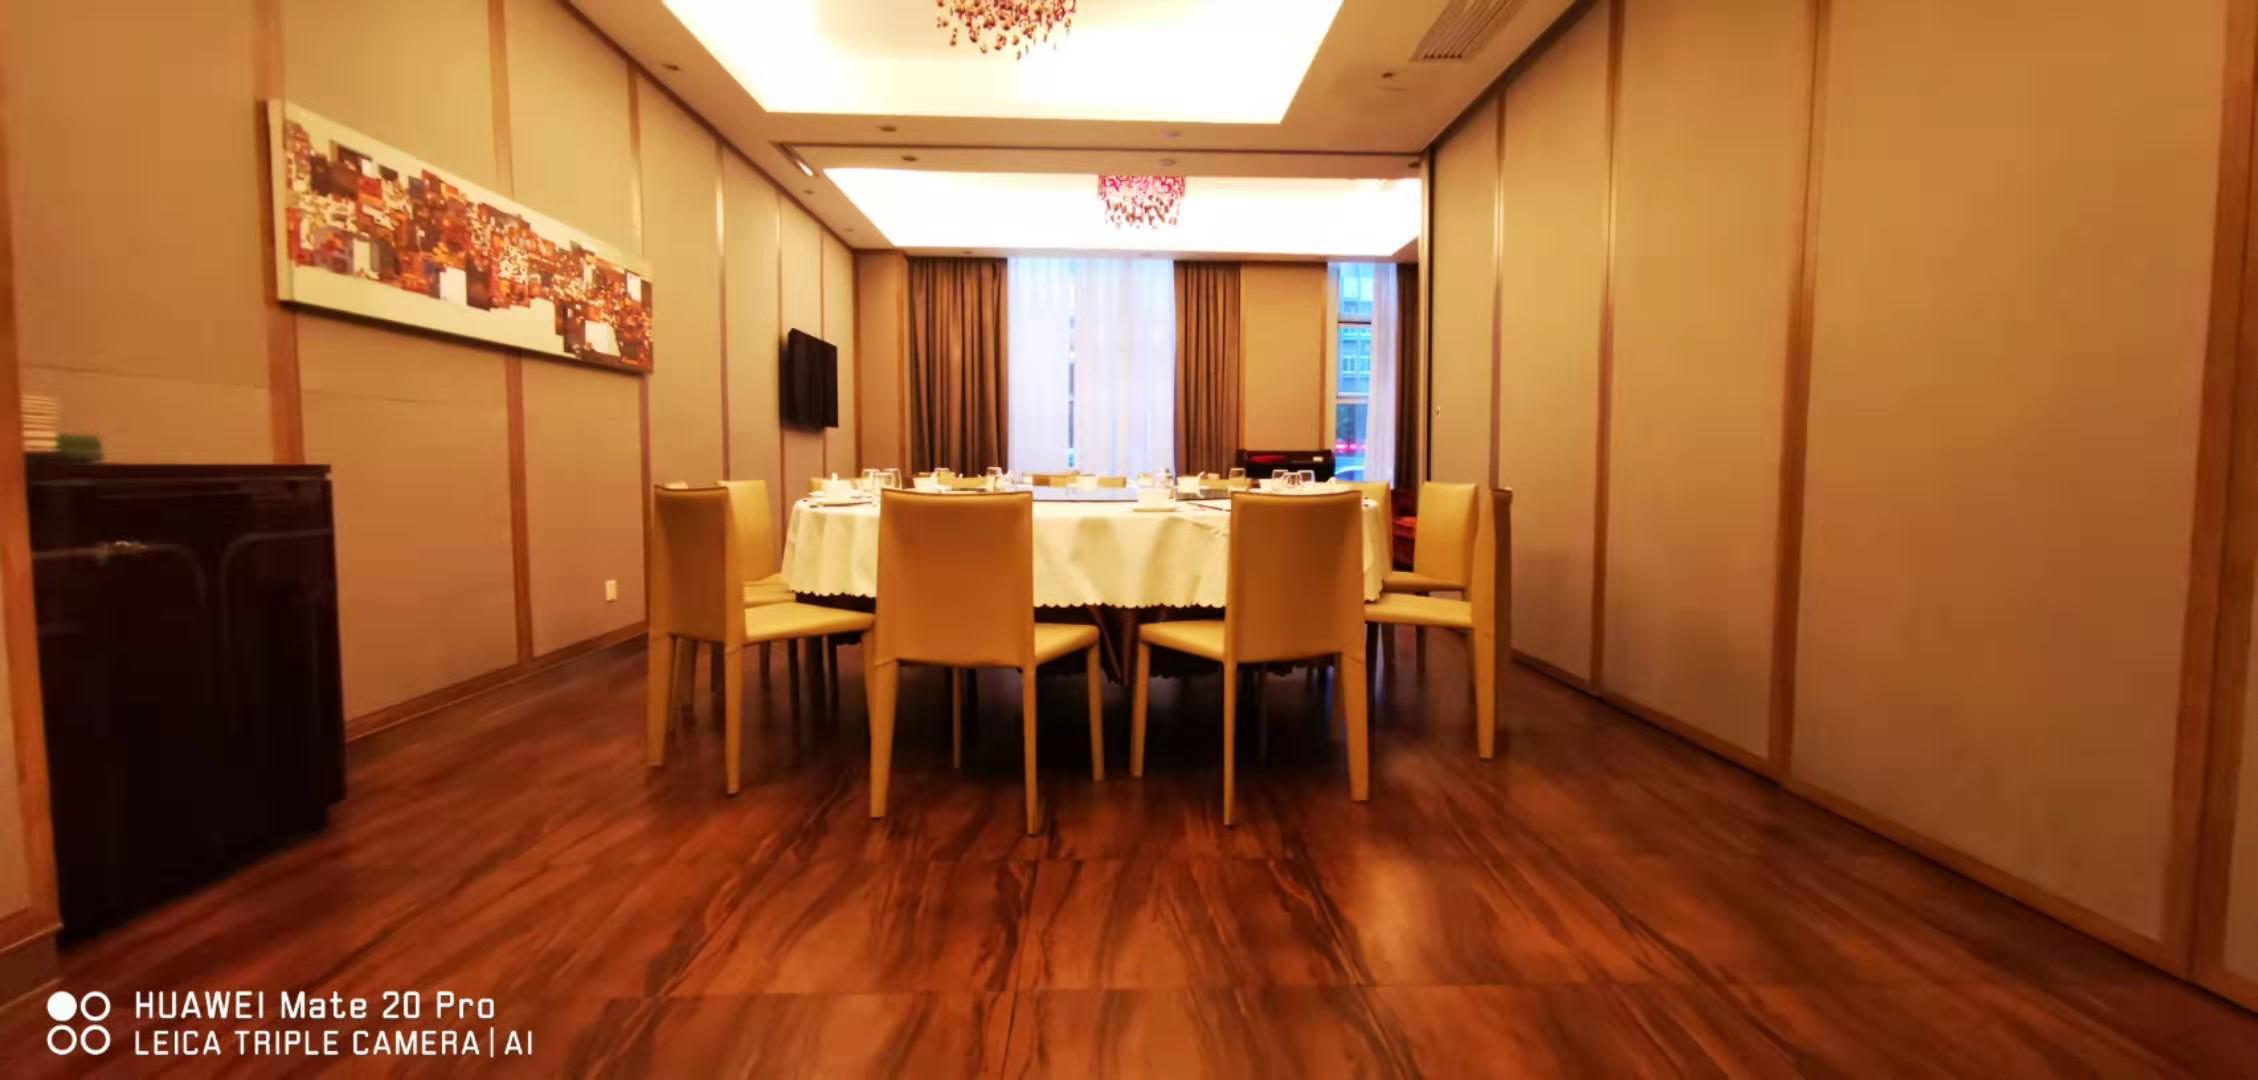 深圳四星级酒店最大容纳360人的会议场地|深圳朗山酒店(原保利酒店)的价格与联系方式